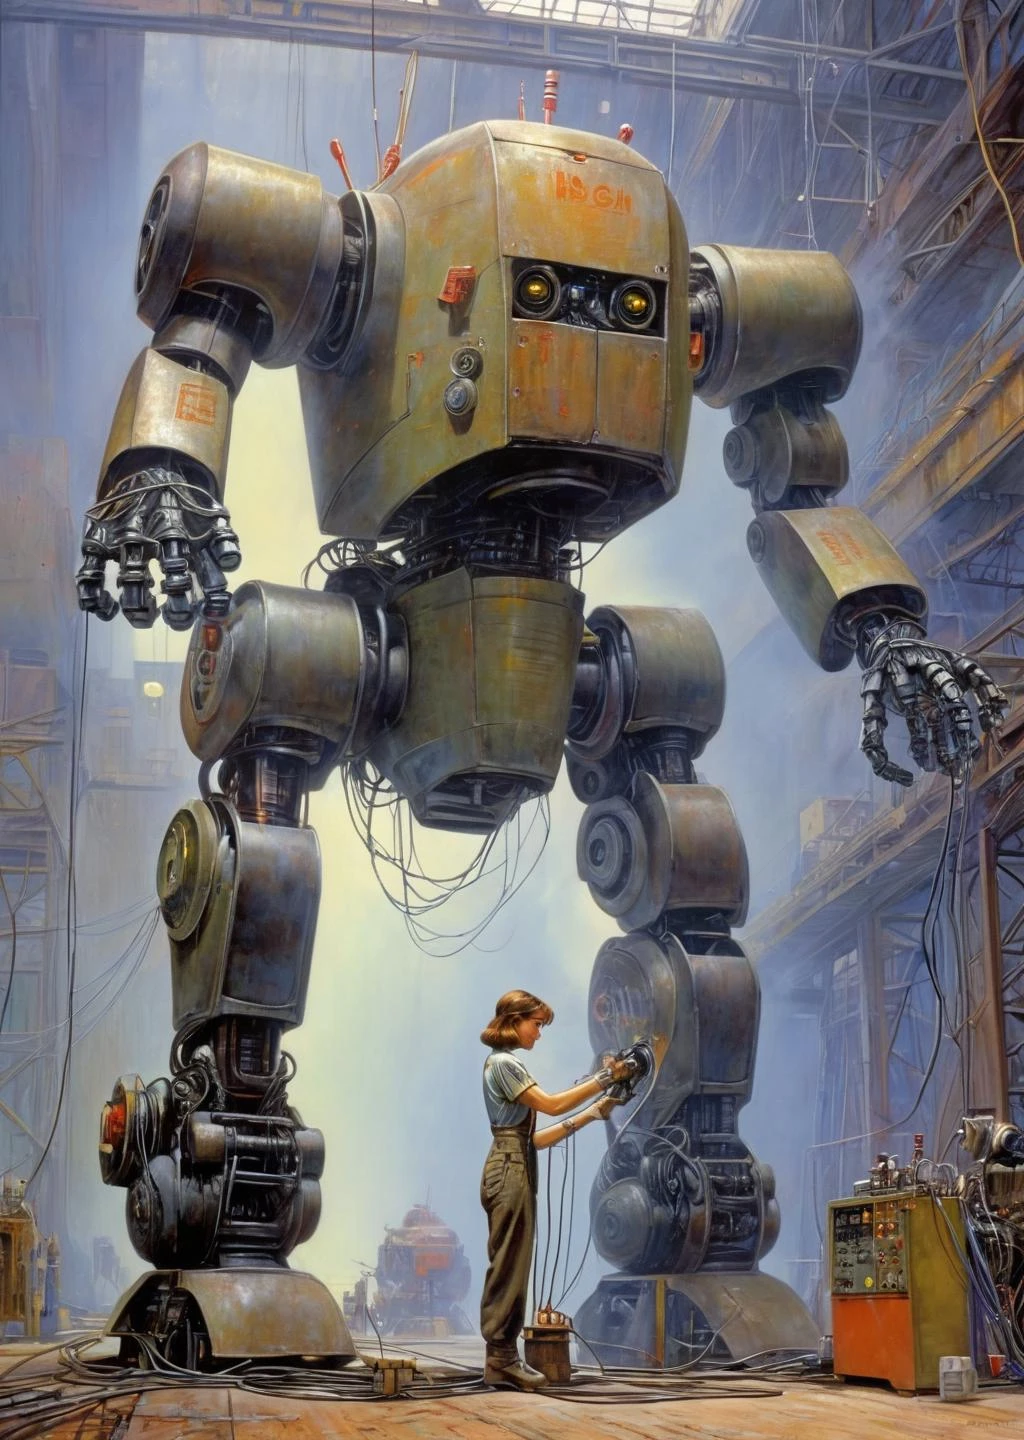 1名女工正在修理巨型機器人, 
電線按鈕, 儀表廠科幻哈里森艾倫肖